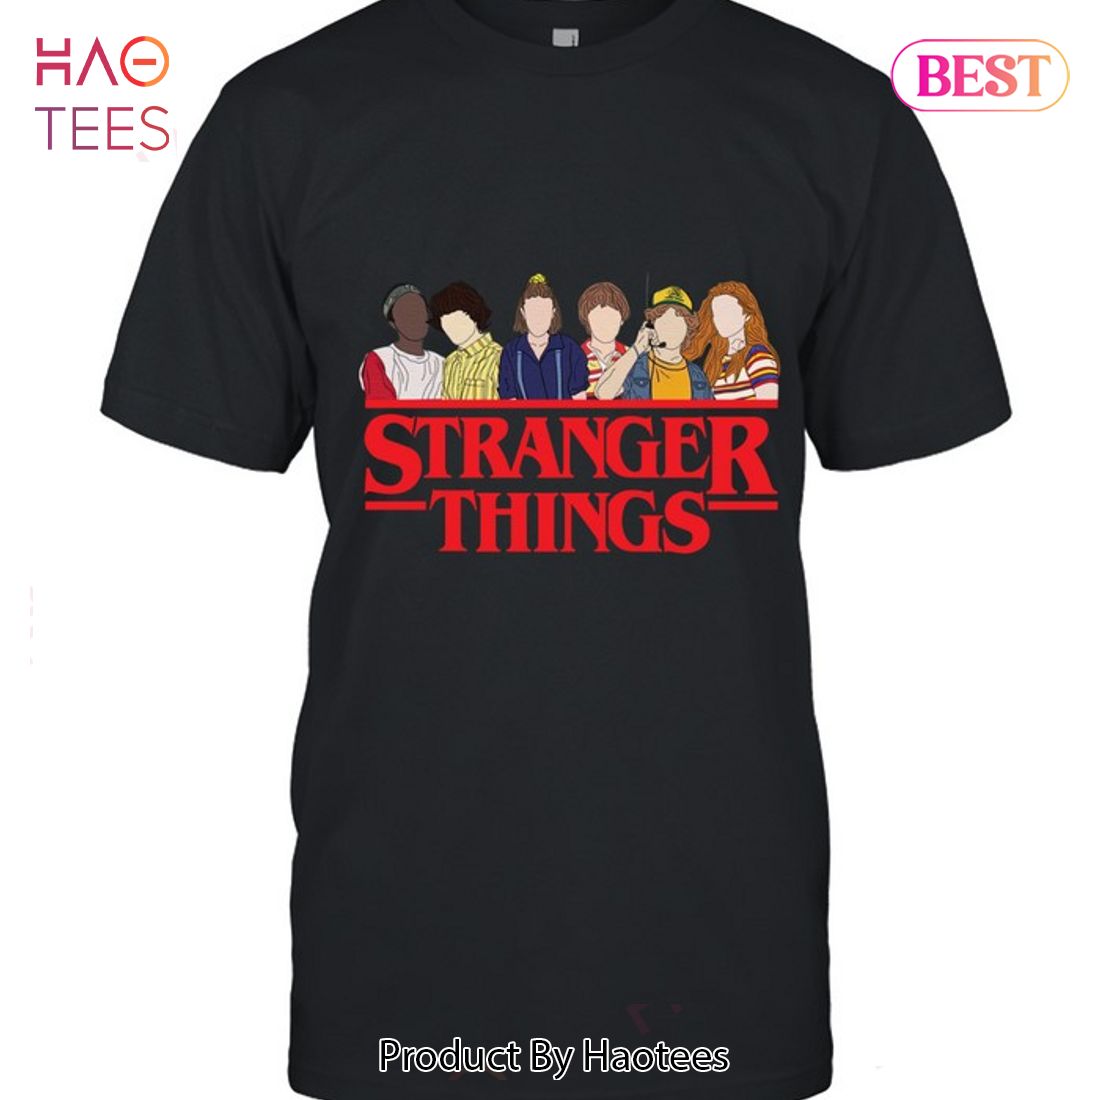 HOT TREND Stranger Things  Friends Unisex T-Shirt